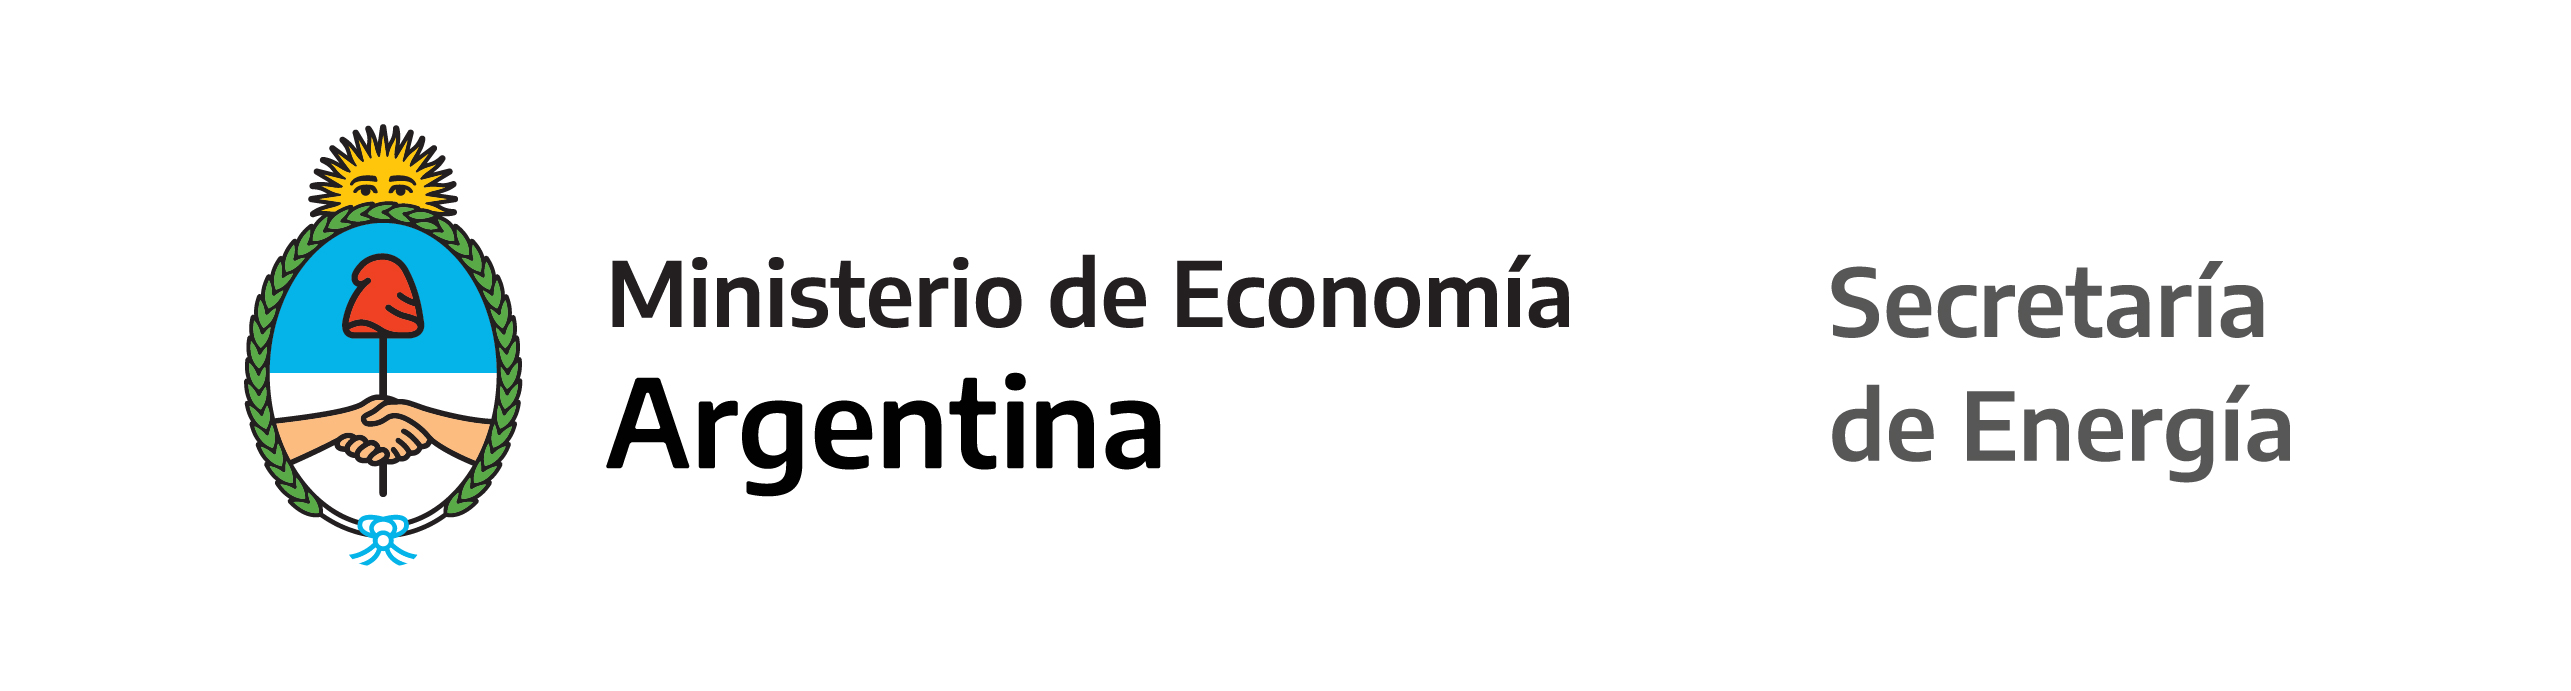 Logo del Ministerio de Economía y Secretaría de Energía